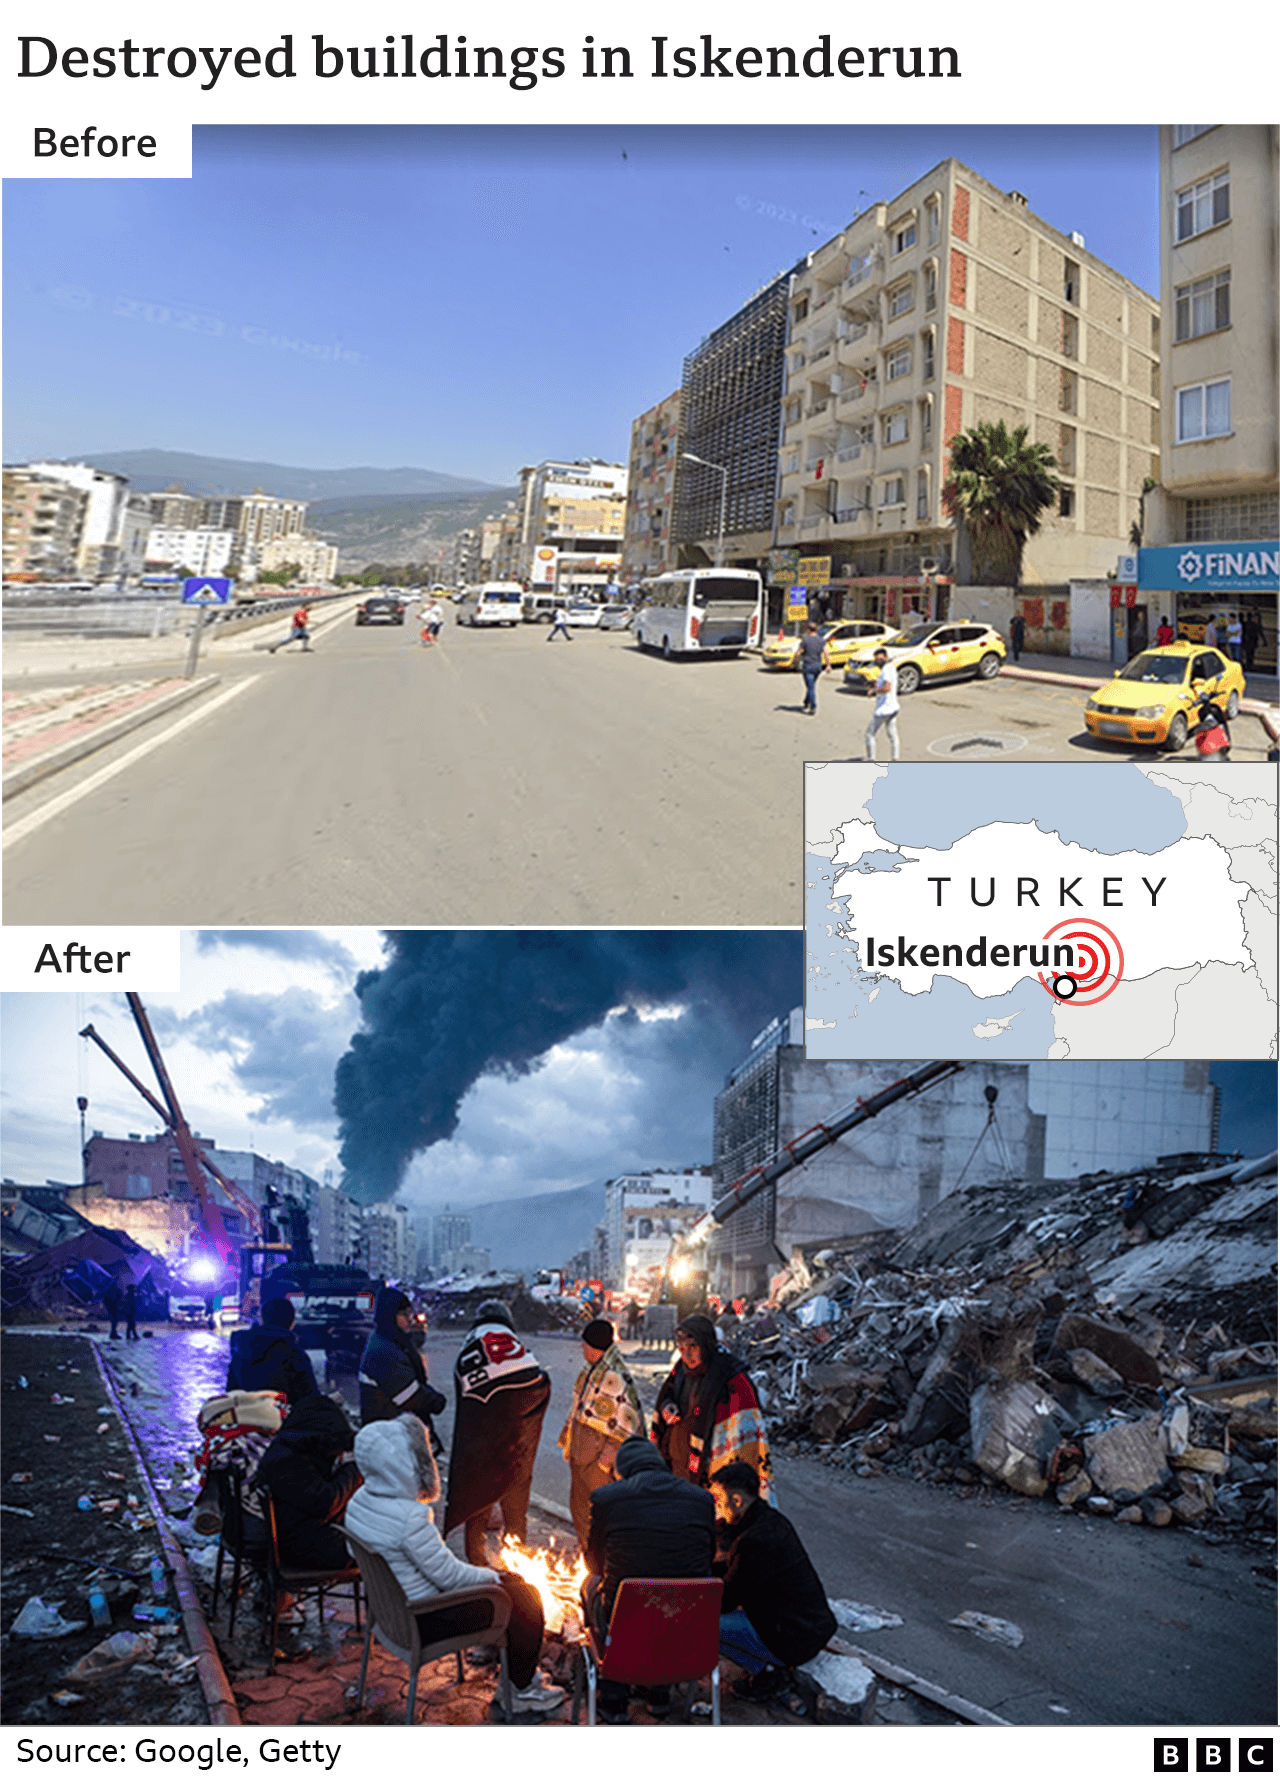 Изображения до и после обрушения зданий в Искендеруне, Турция.